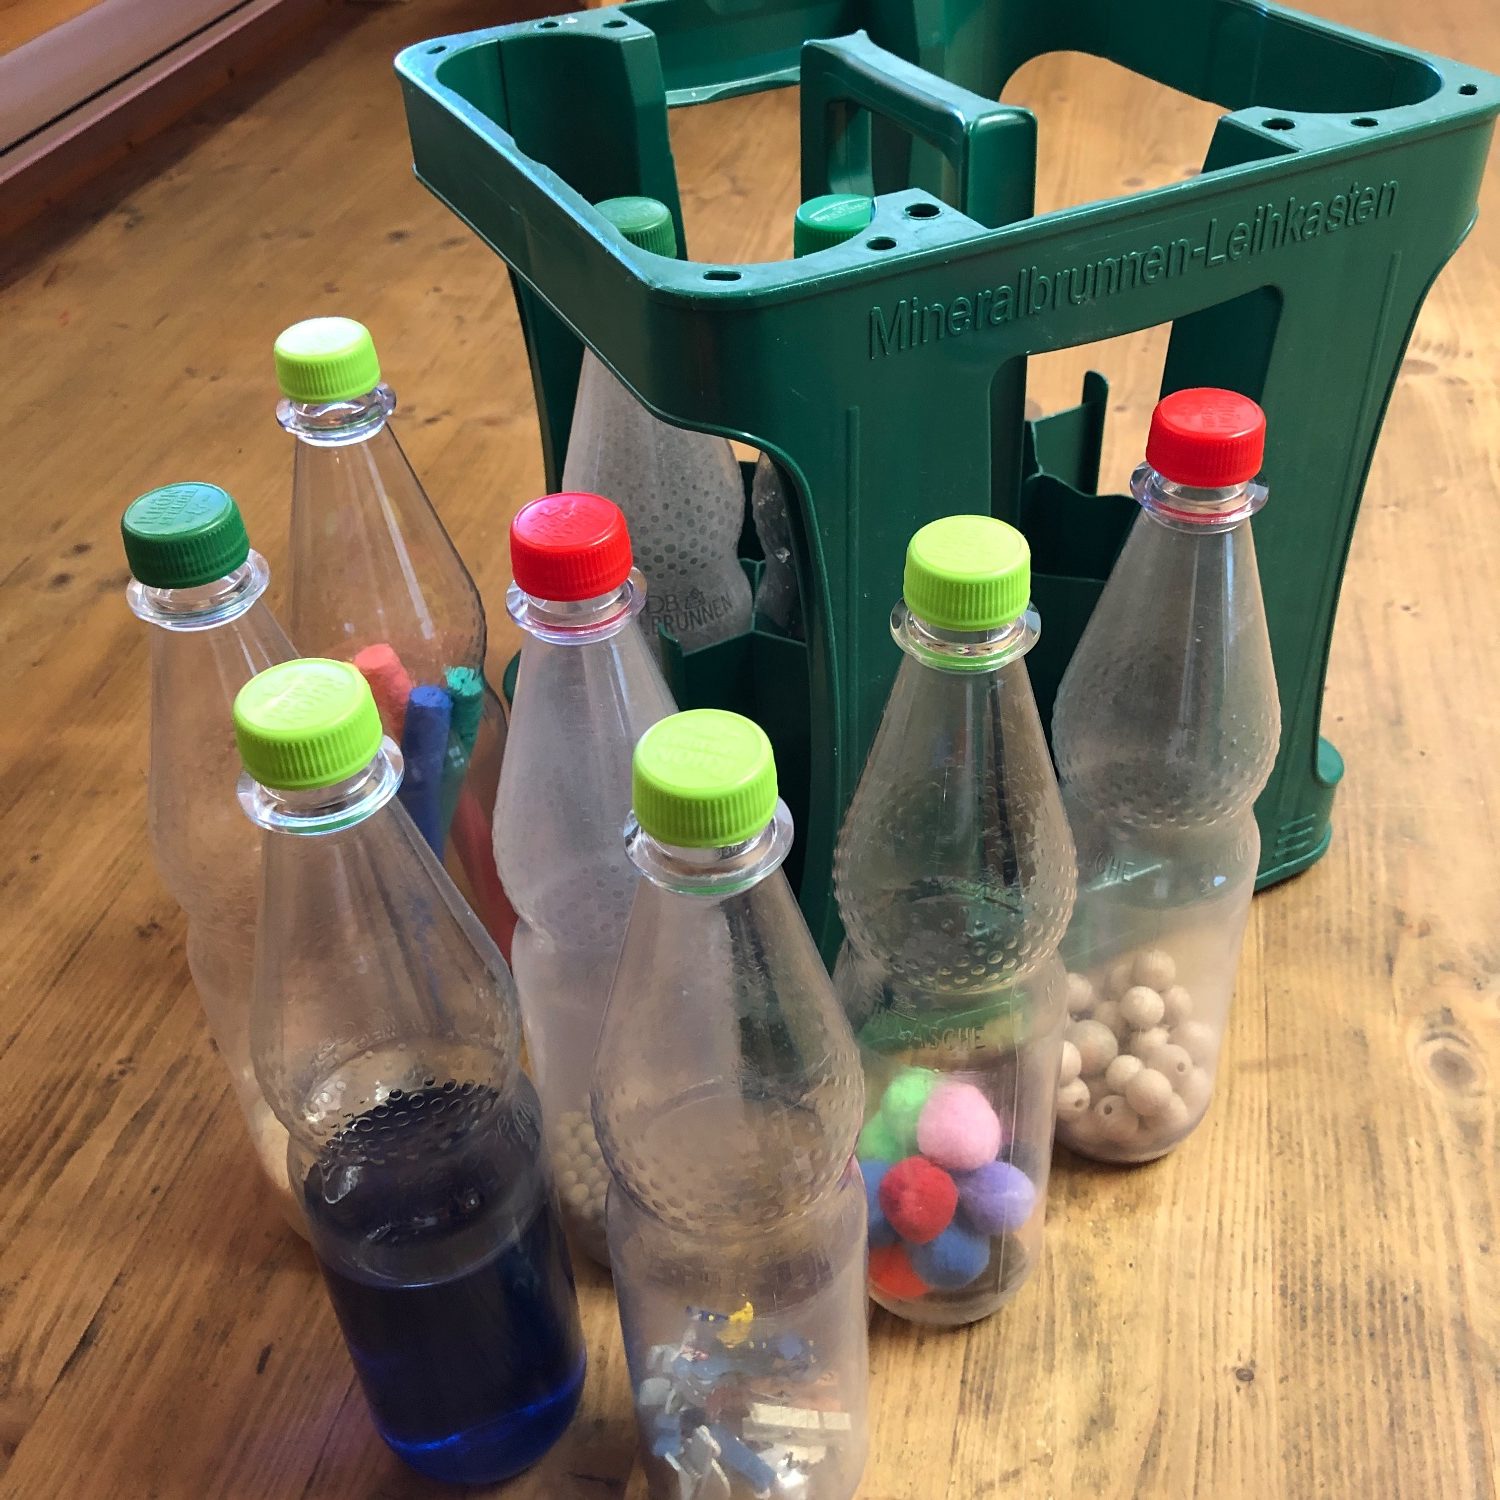 Titelbild zur Idee für die Beschäftigung mit Kindern '(70) Spiel mit leeren Plastikflaschen'